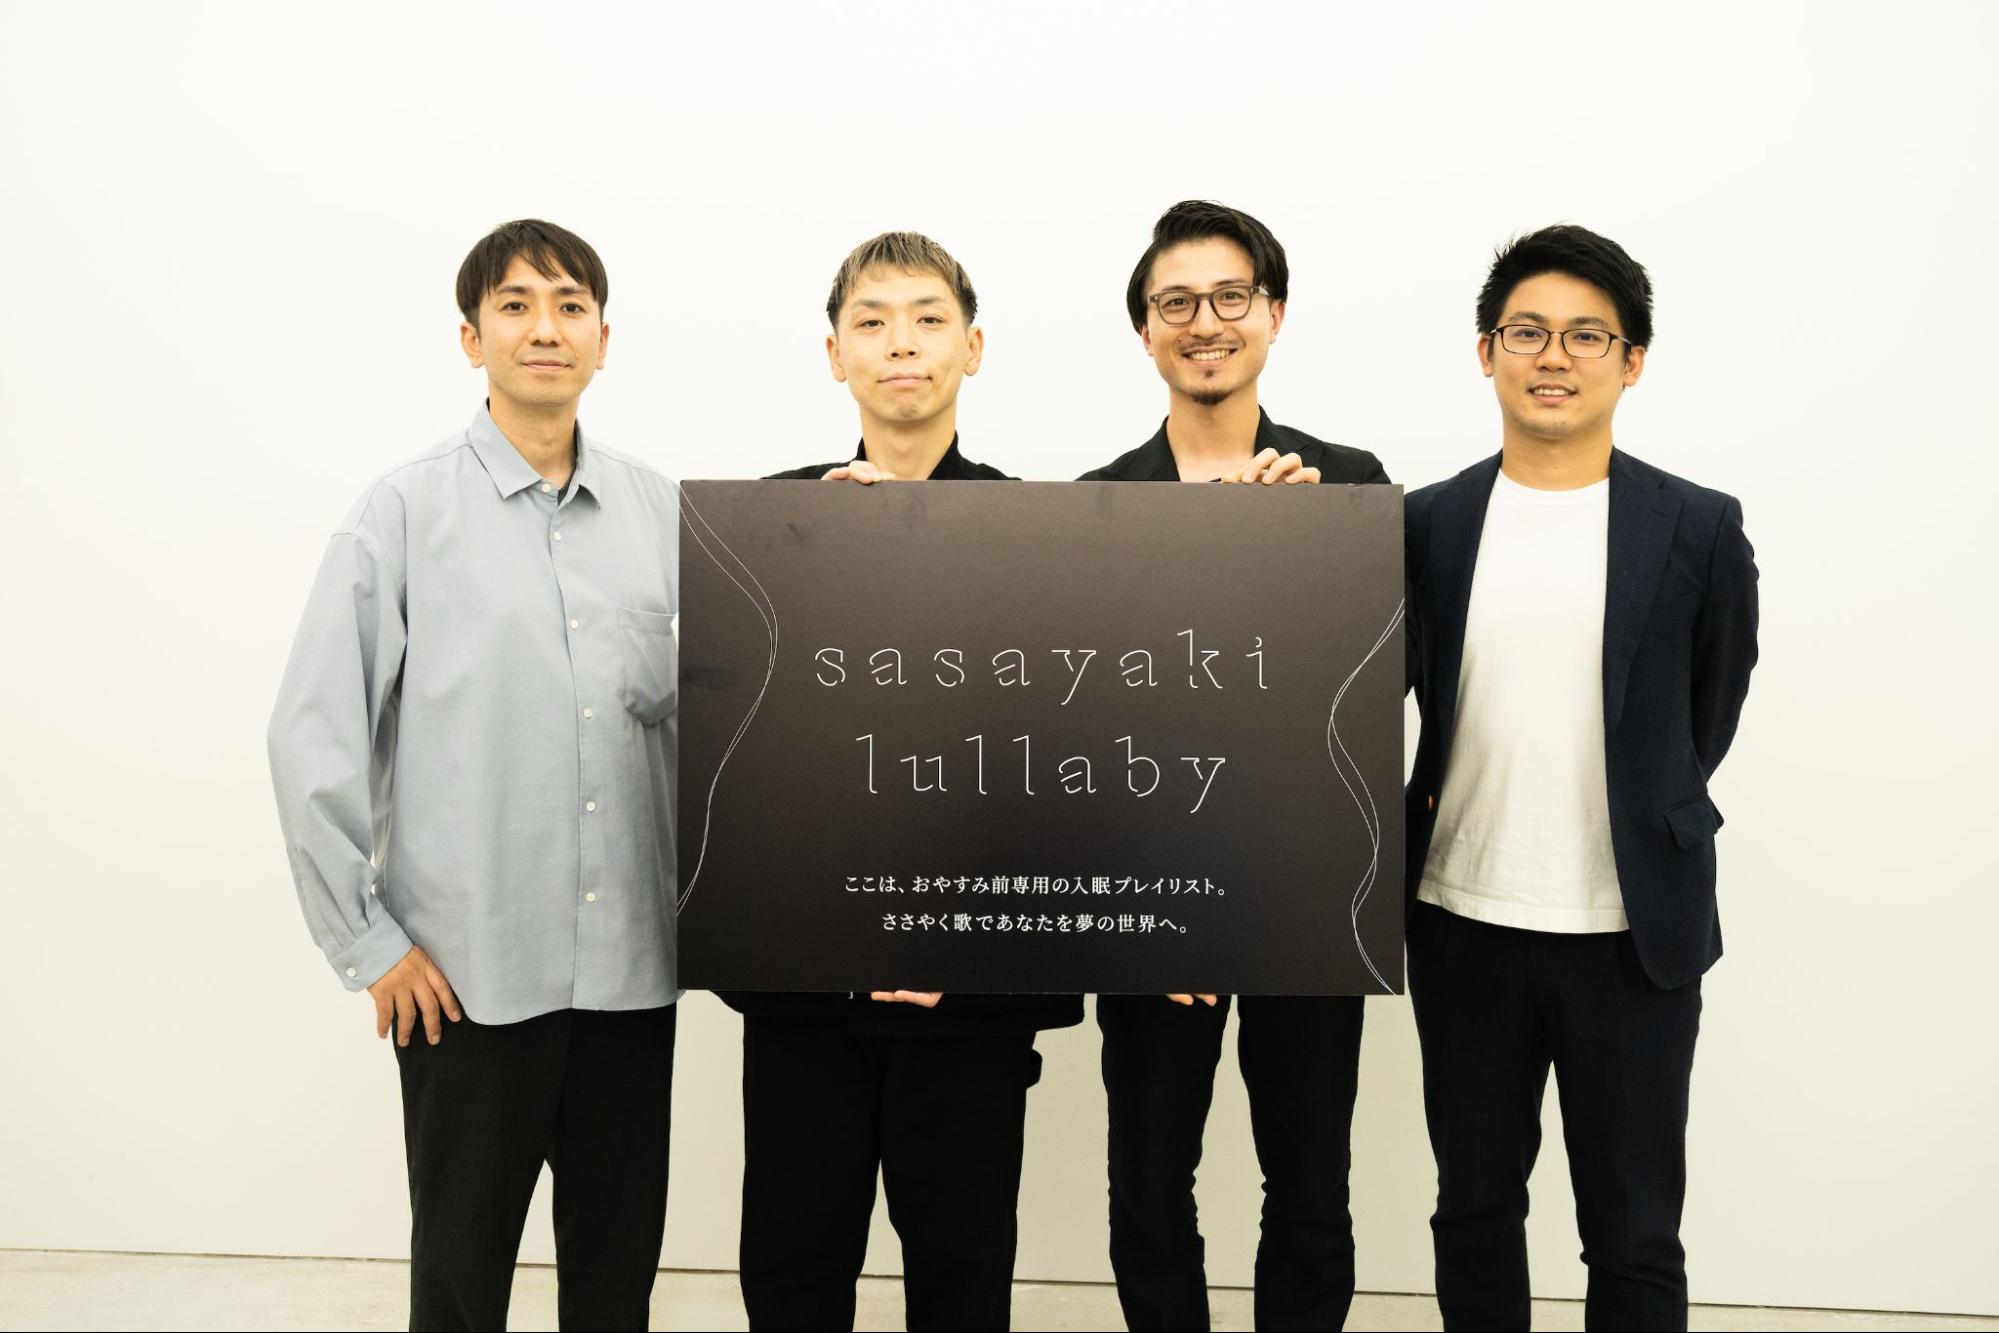 眠らない国・日本から拡がる“快眠の輪”─「sasayaki lullaby」が誘う“音楽×睡眠”の新たな可能性 | 知財図鑑